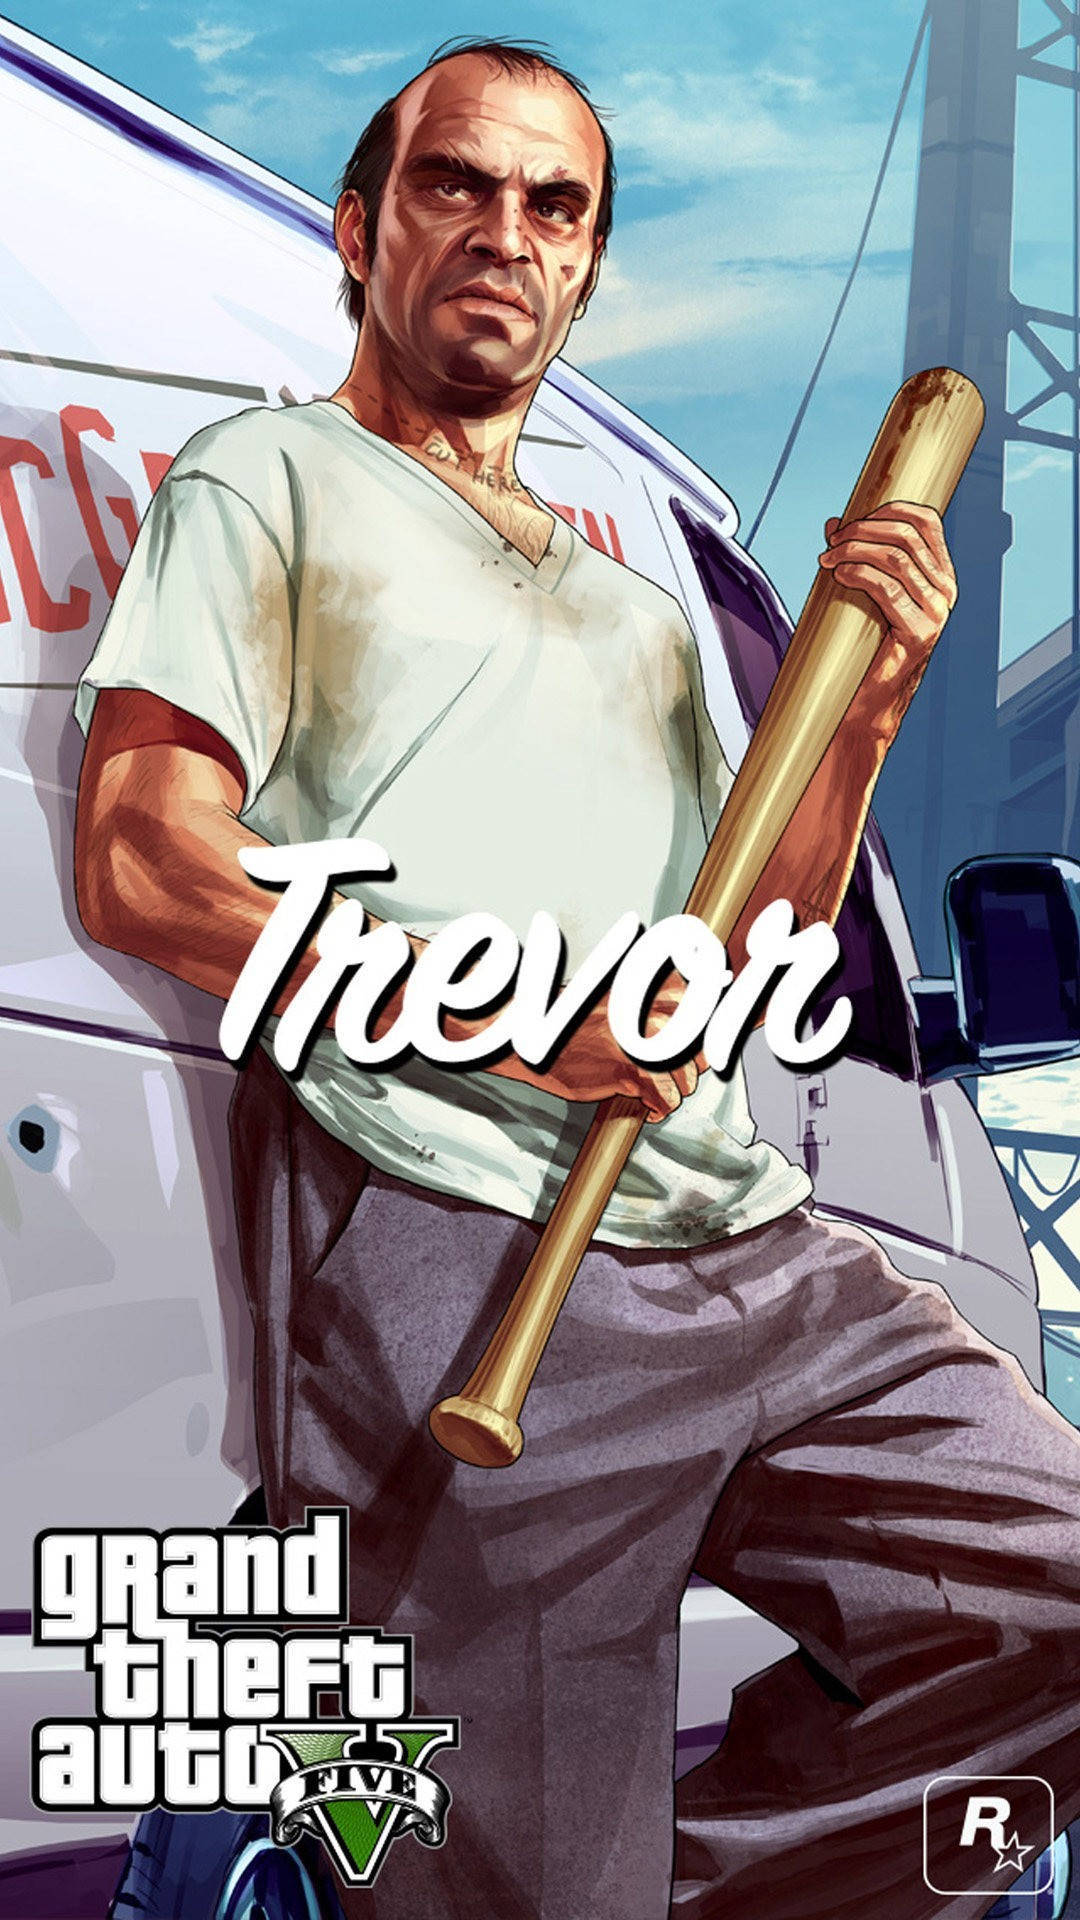 En mand holder en baseball bat foran en varevogn Wallpaper